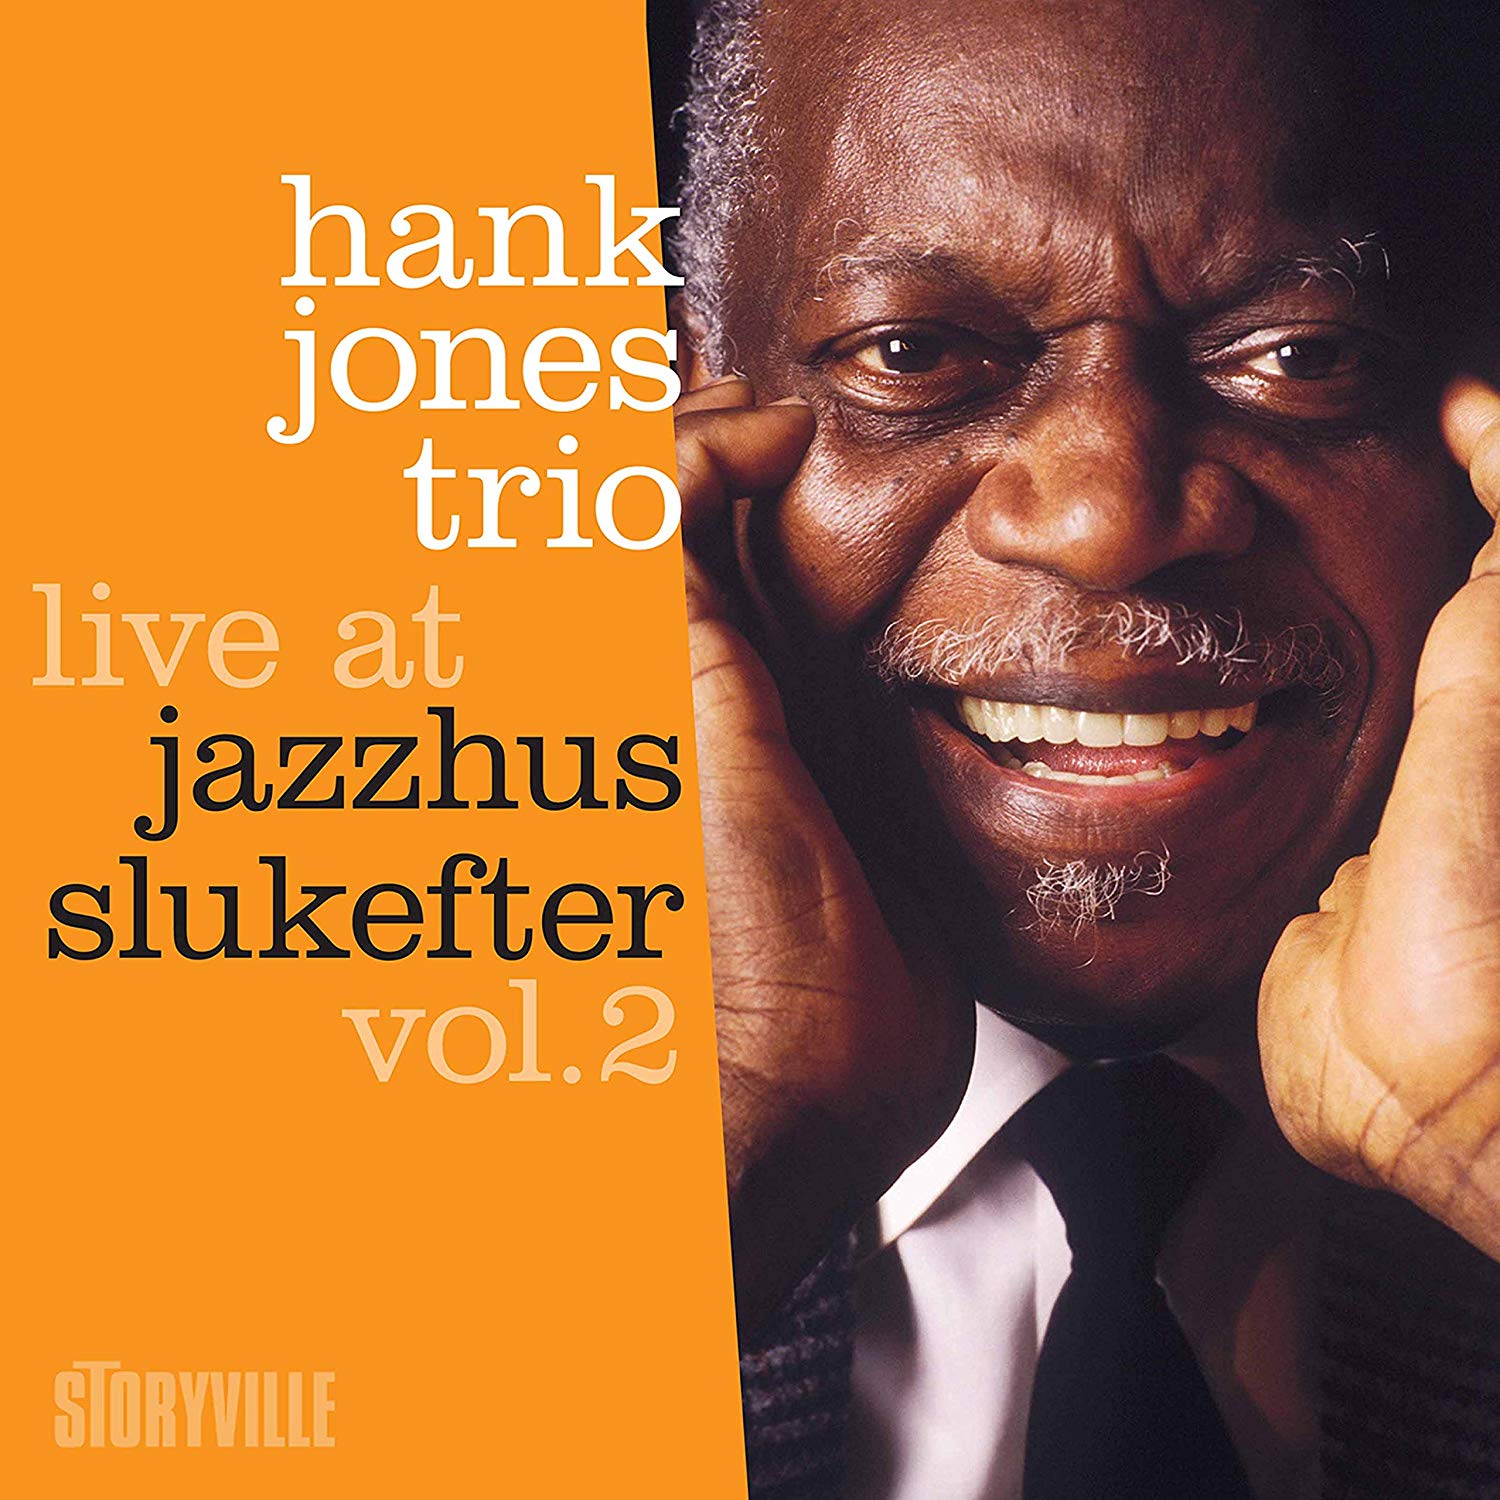 HANK JONES - Live at Jazzhus Slukefter vol.2 cover 